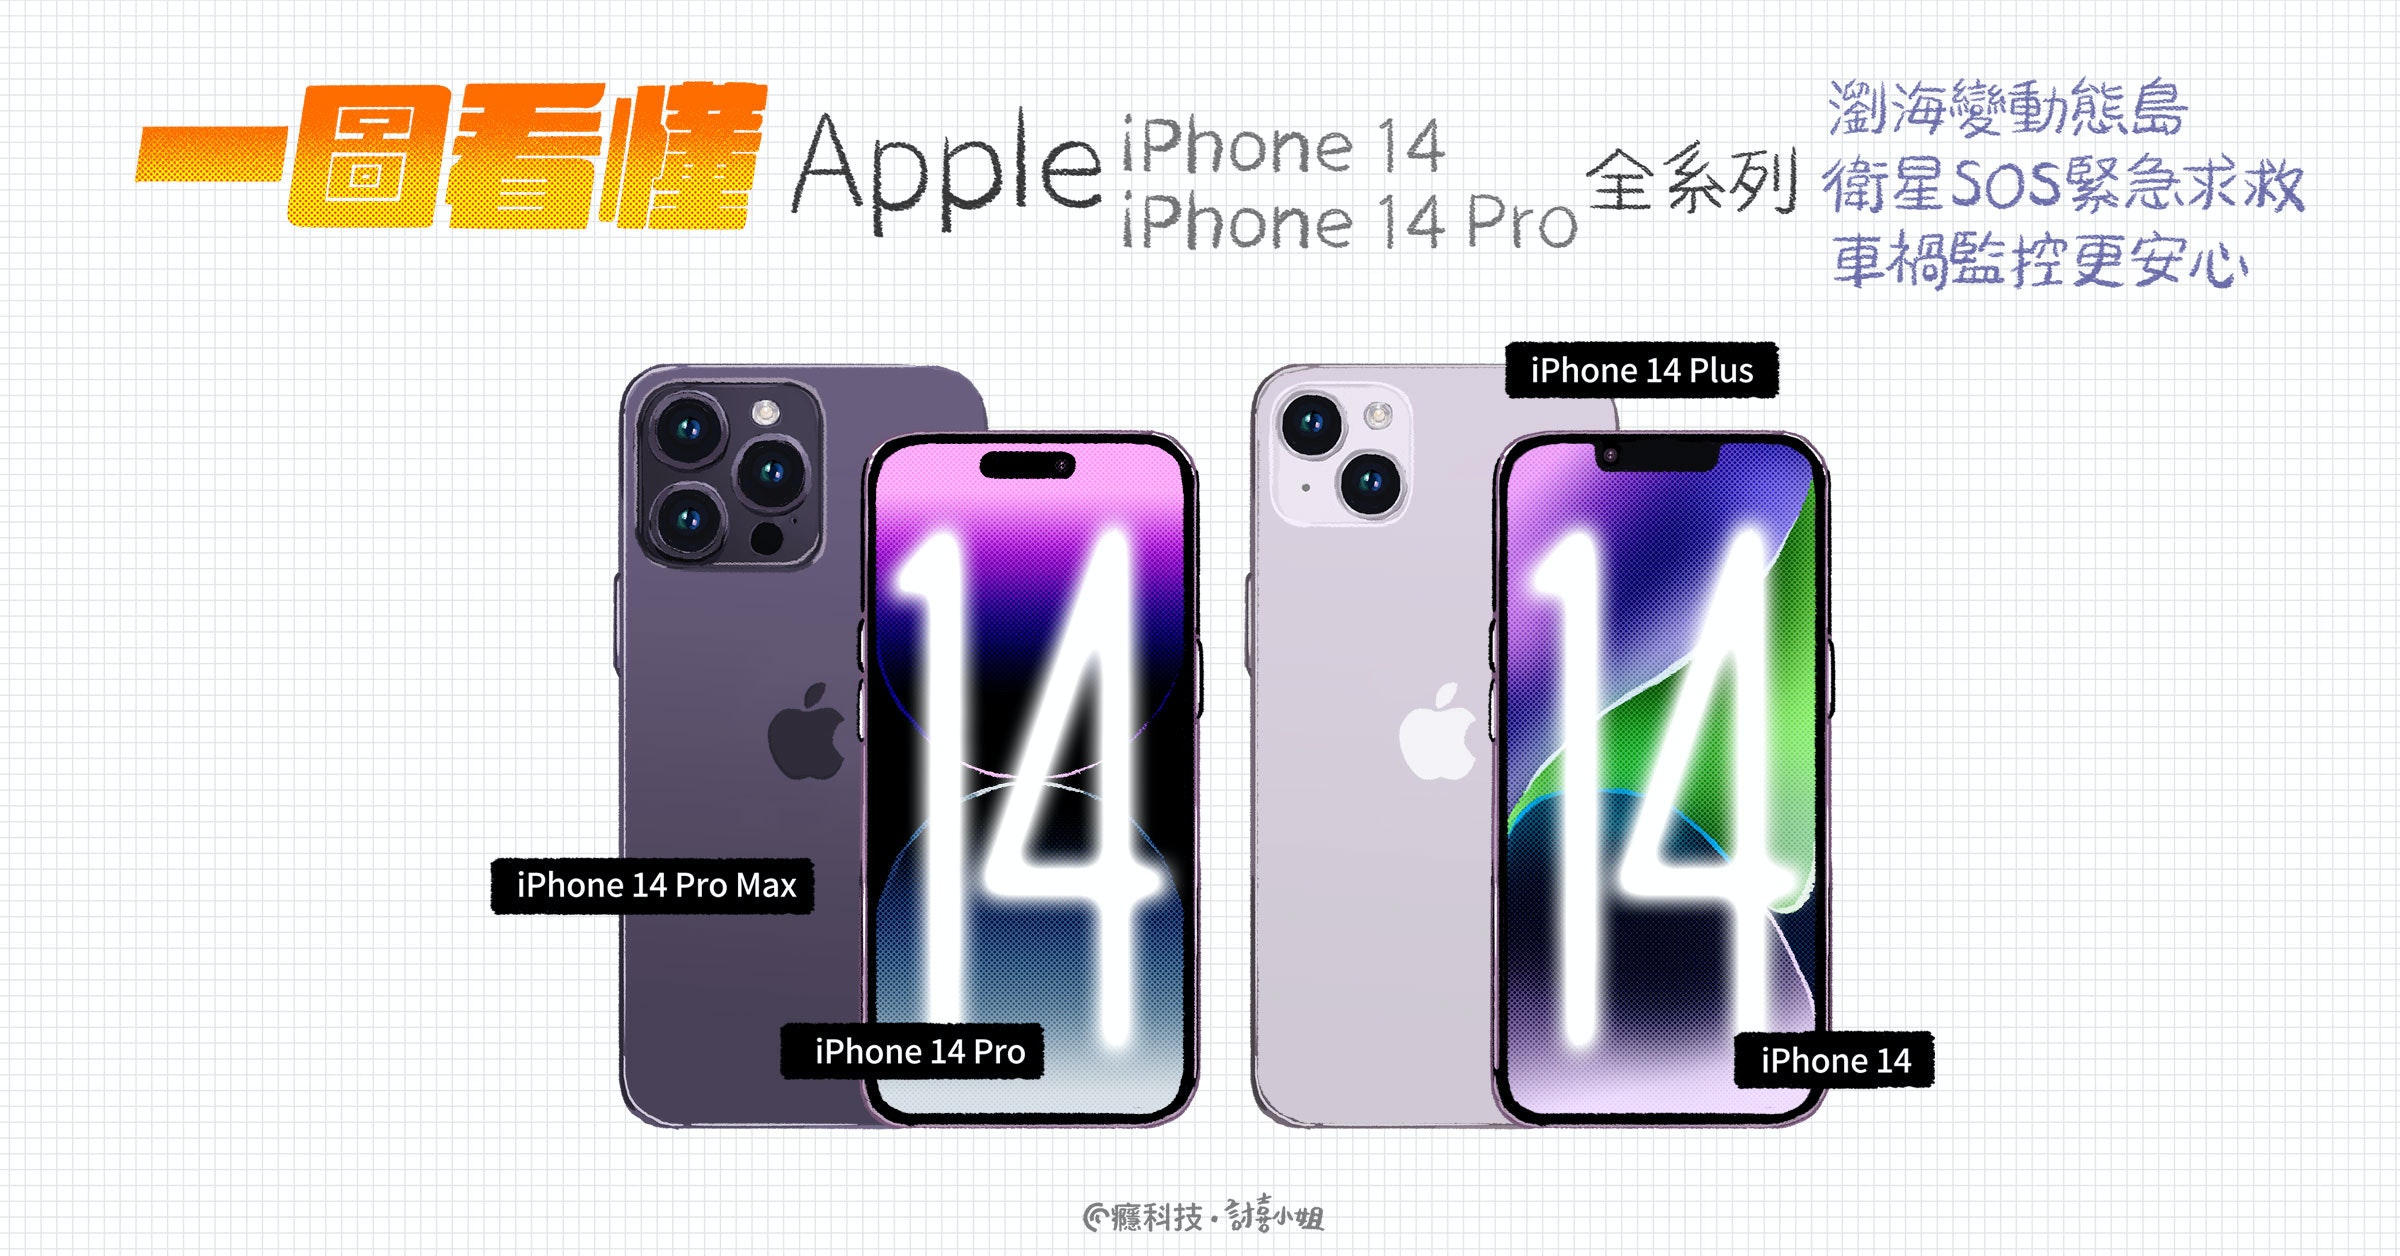 照片中提到了圖三、Apple iPhone 14、iPhone 14 Pro Max，包含了手機、手機、移動電話、手機外殼、產品設計